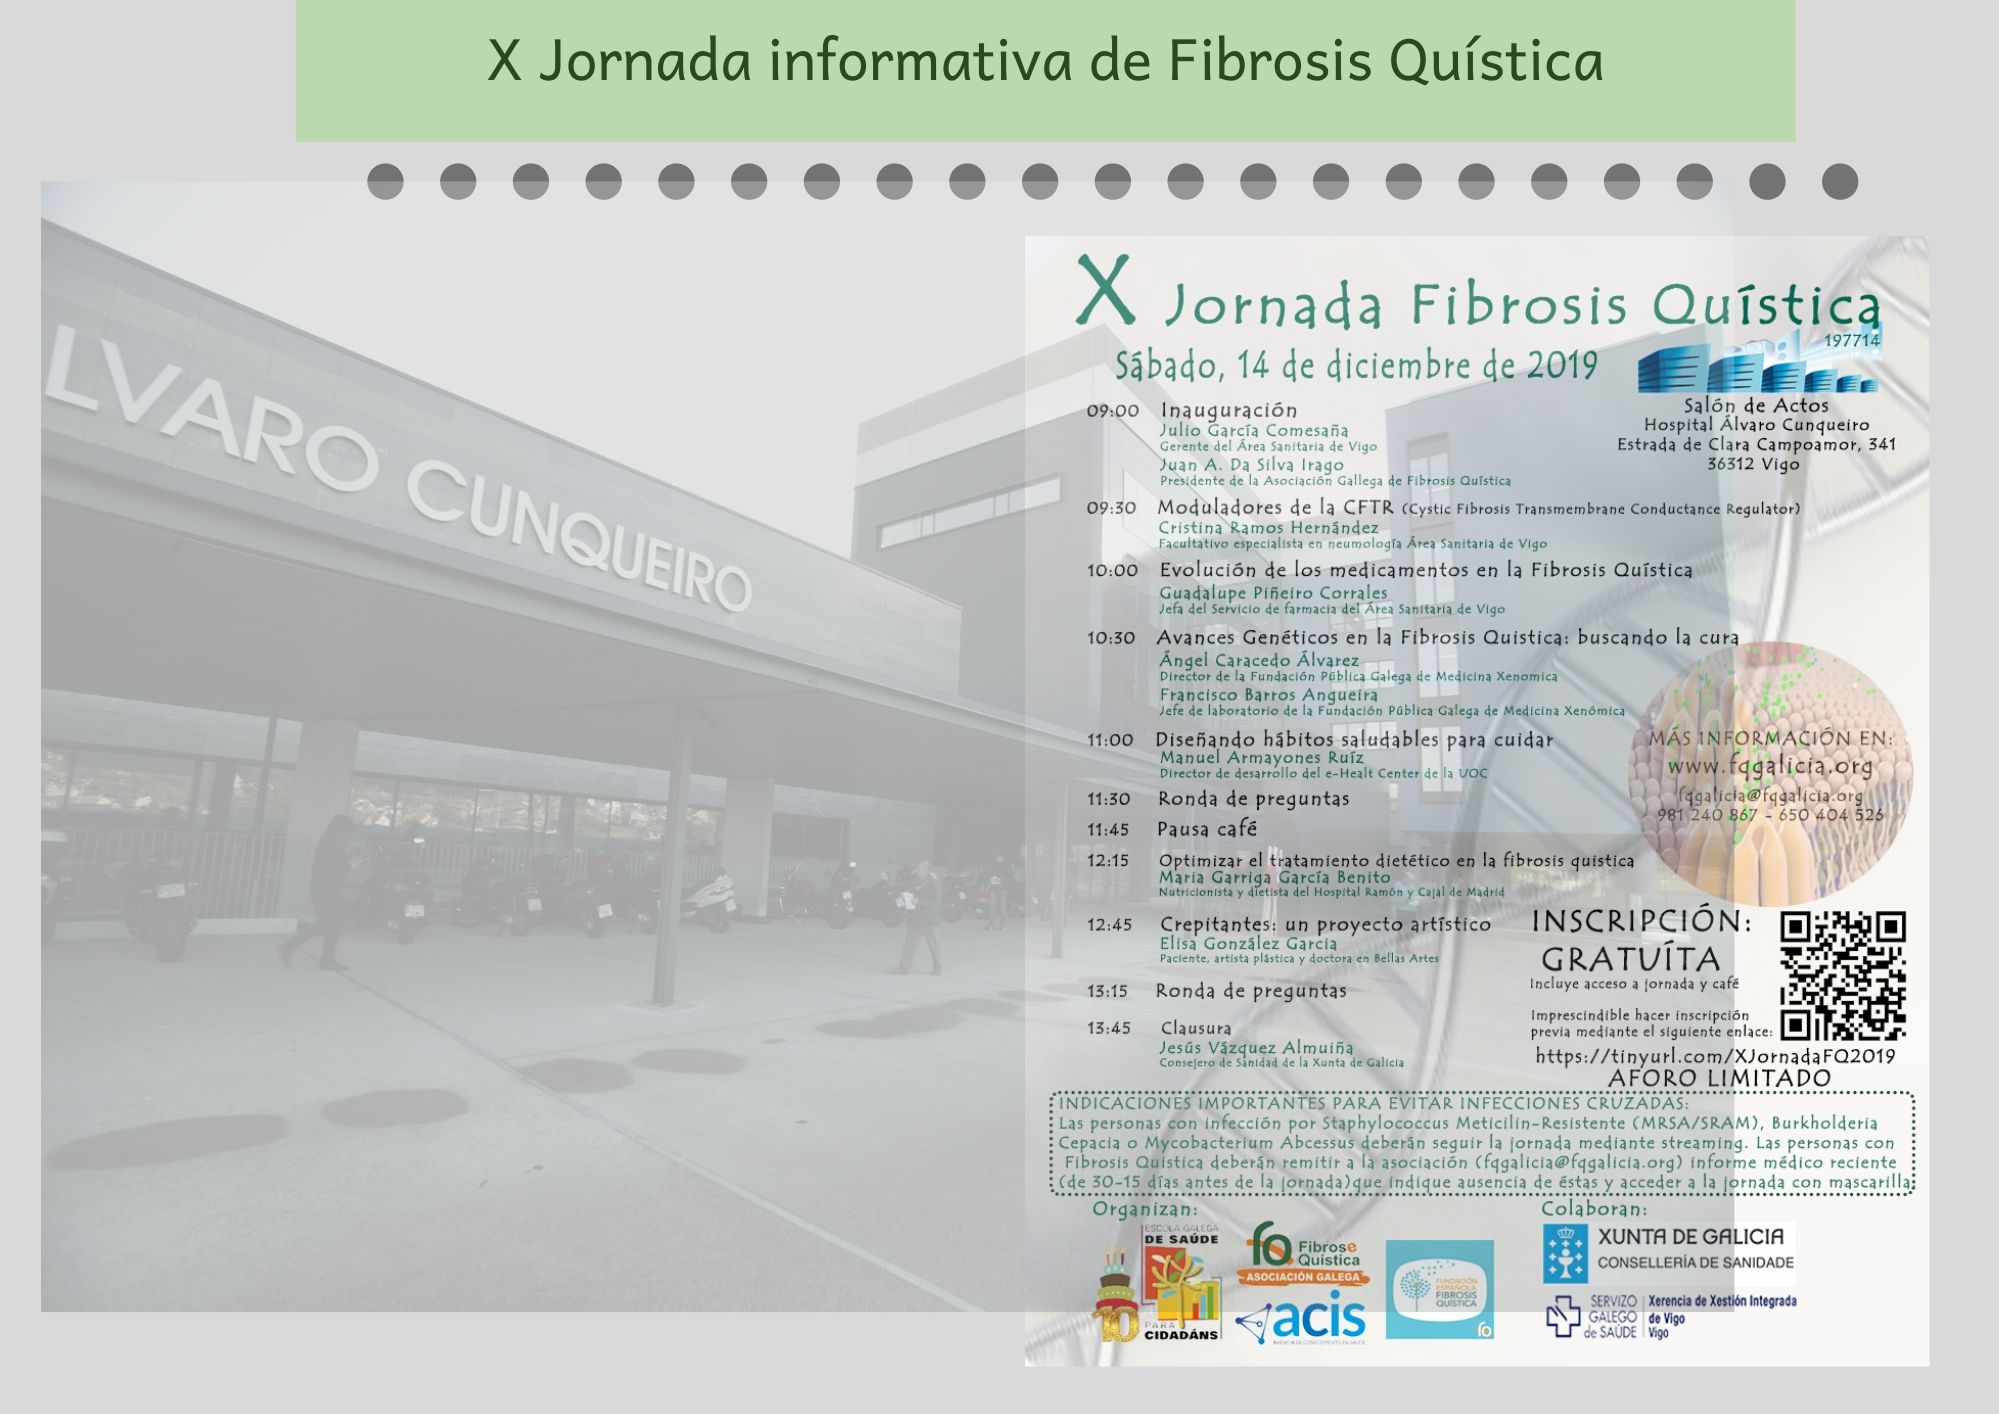 X Xornada informativa de Fibrose Quística. Realizarase no Salón de Actos do Hospital Álvaro Cunqueiro de Vigo.